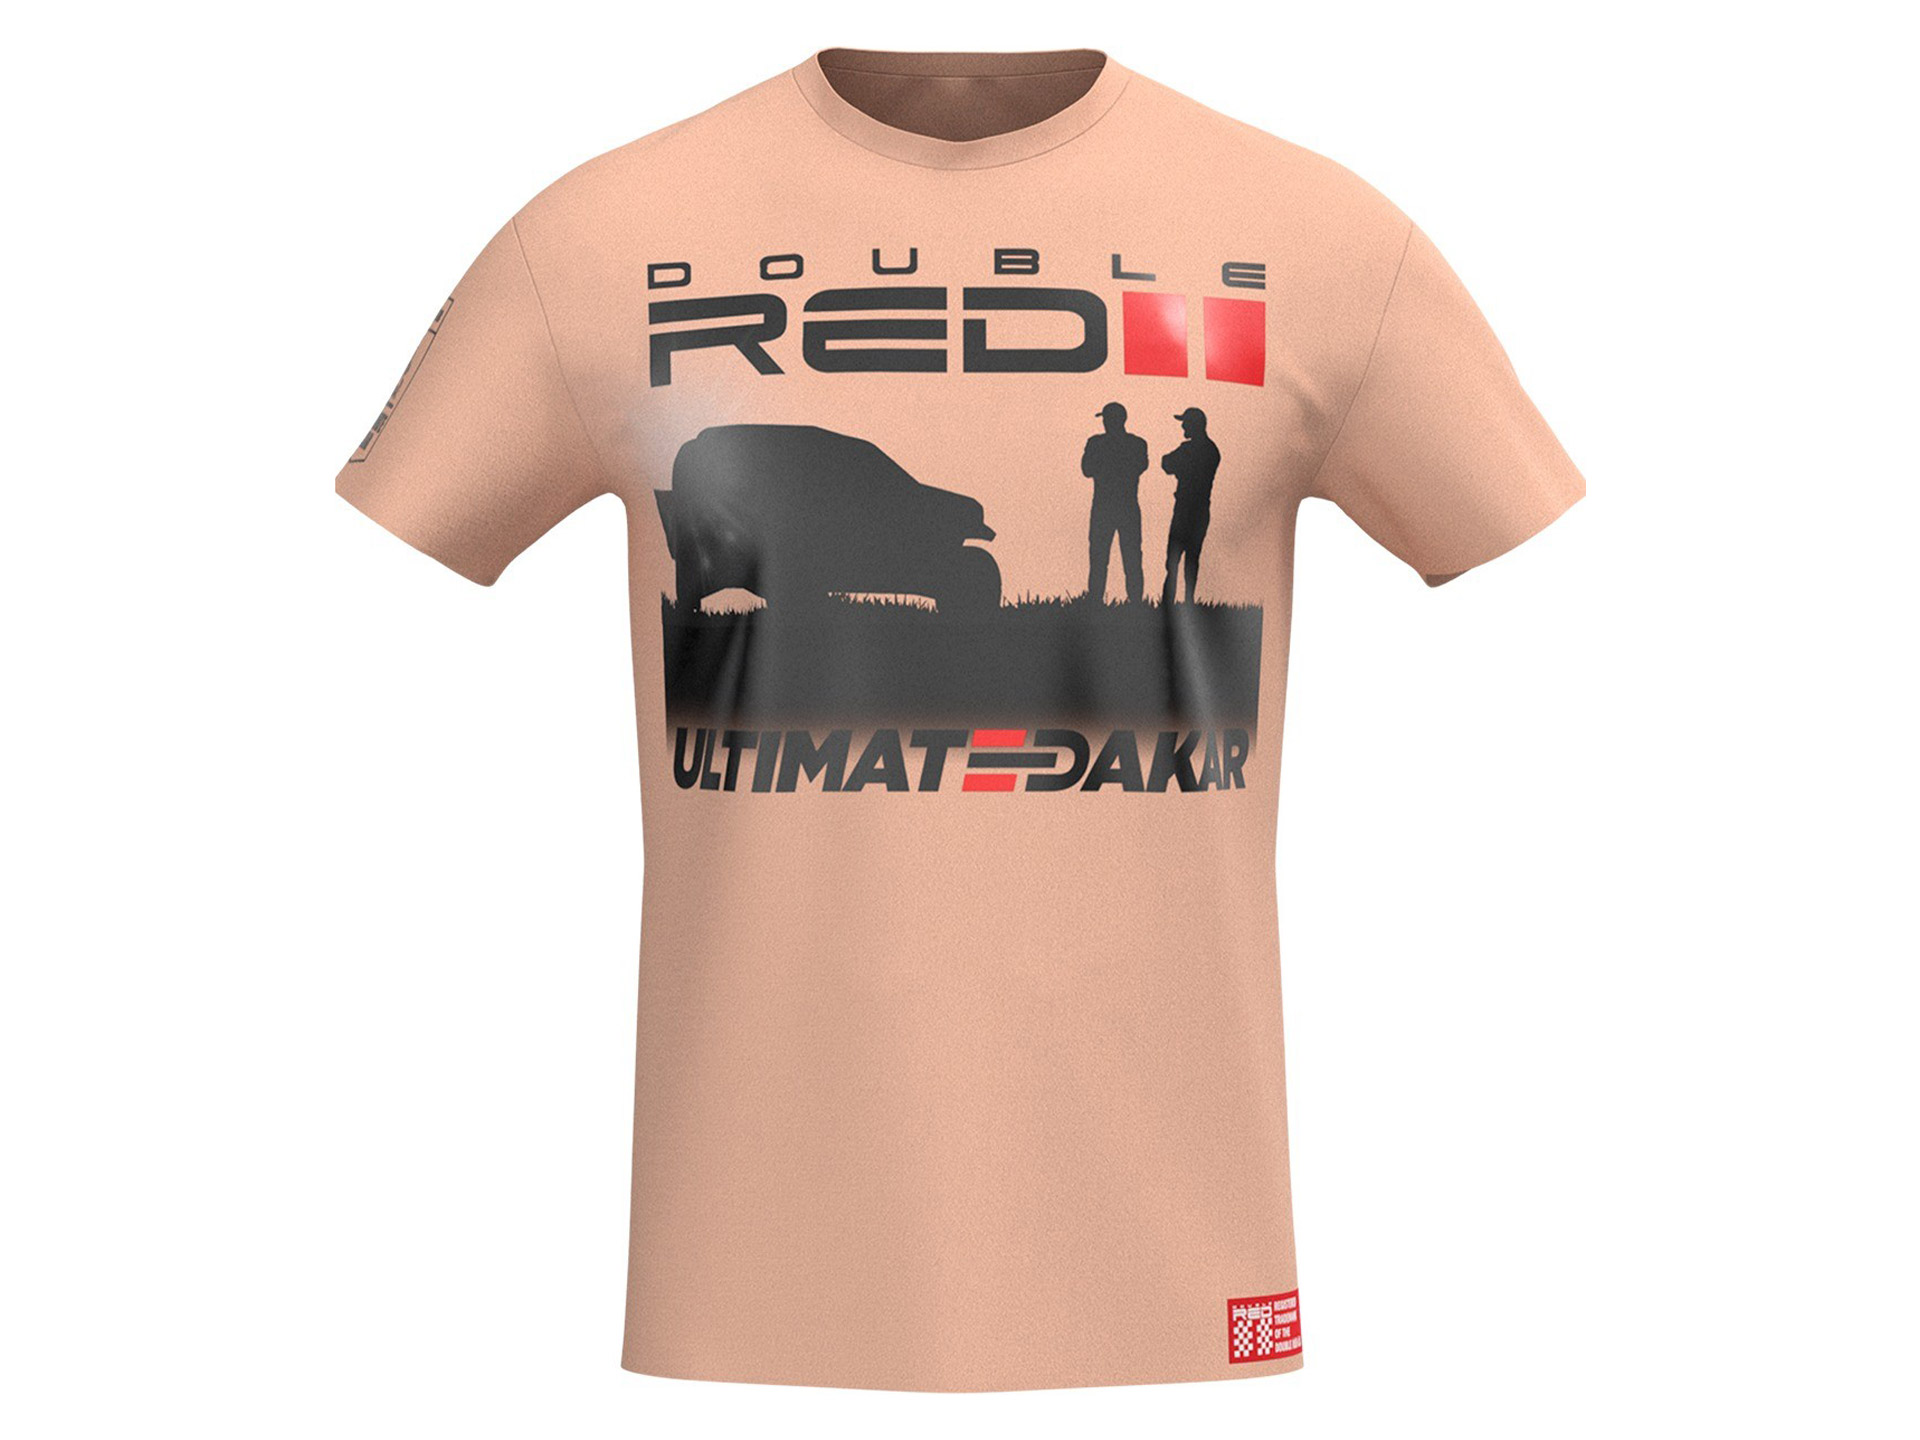 Obrázek galerie Tričko Ultimate Dakar Racing – Kolekce Double Red 2021 – Unisex písečná – XXL